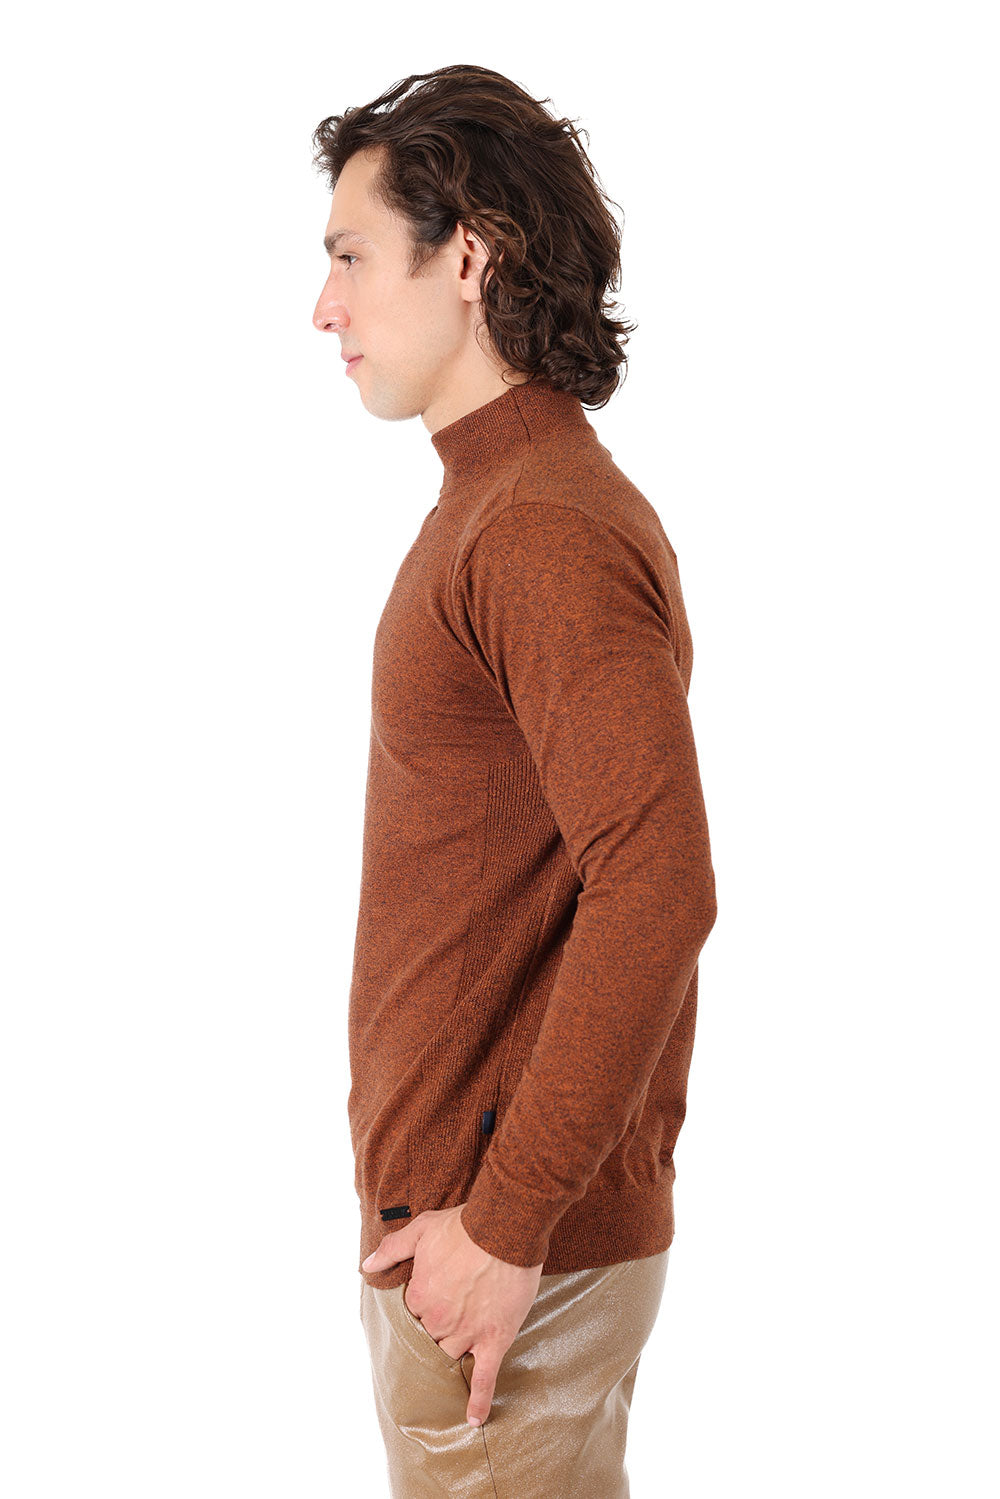 Men's Turtleneck Ribbed Solid Color Mock Turtleneck Sweater 2LS2103 Maroon